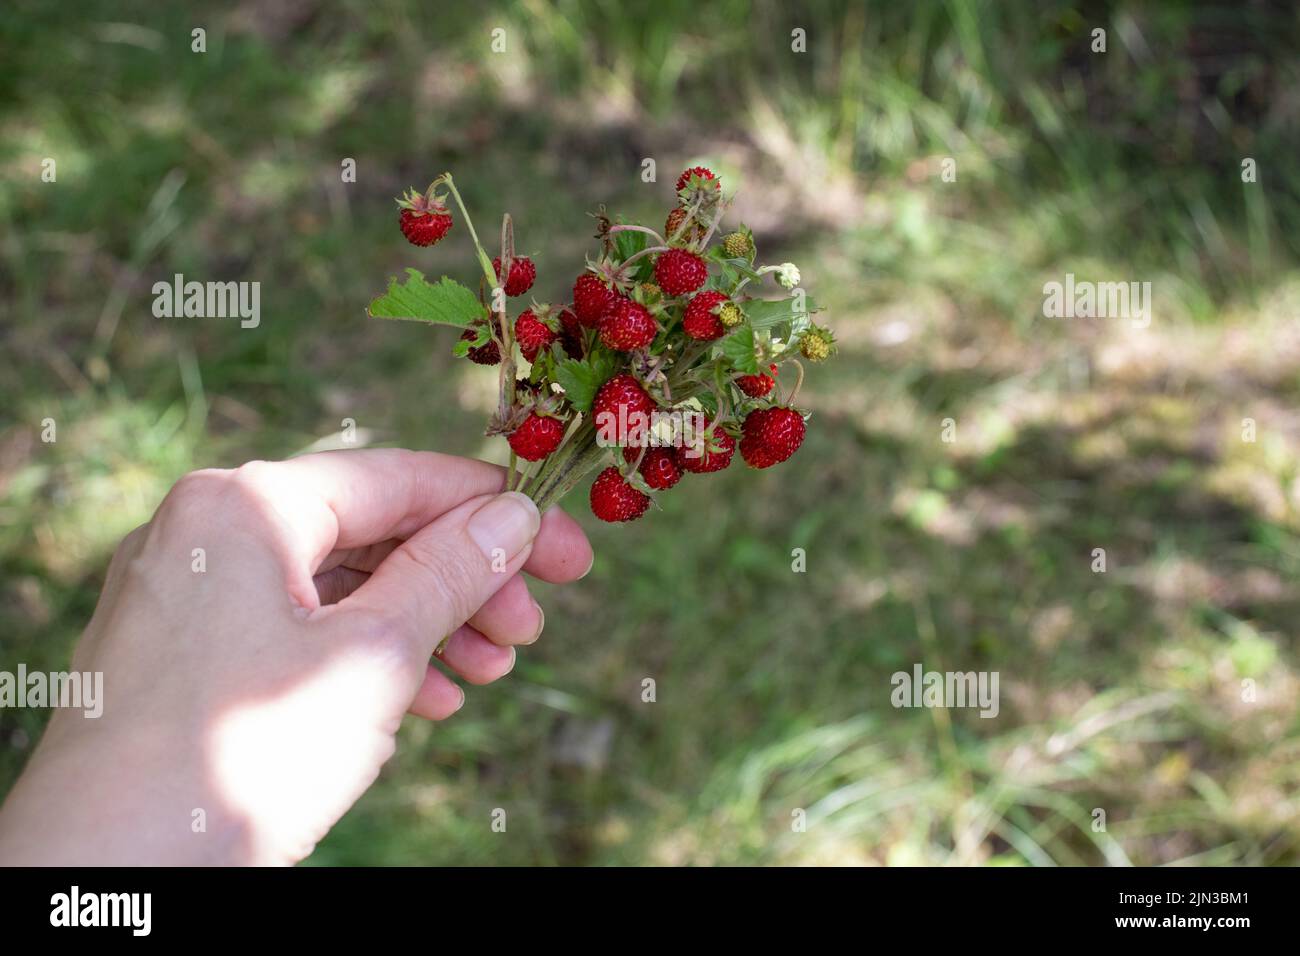 Petites fraises sauvages sur le Bush dans la main femelle sur fond d'herbe verte. Femme tenant des baies rouges. Style de vie d'été. Cueillette de petites fraises Banque D'Images